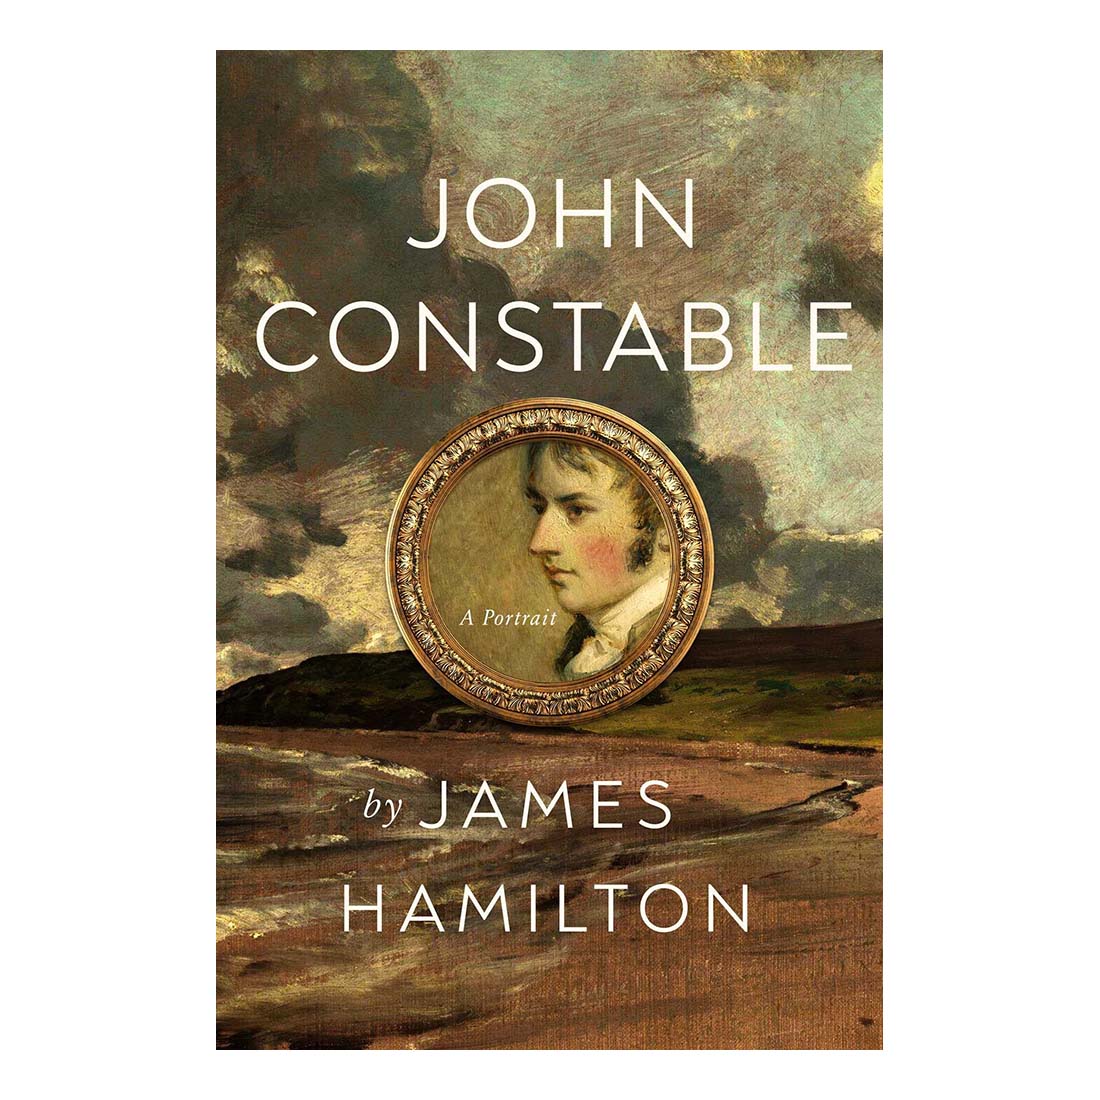 John Constable: A Portrait